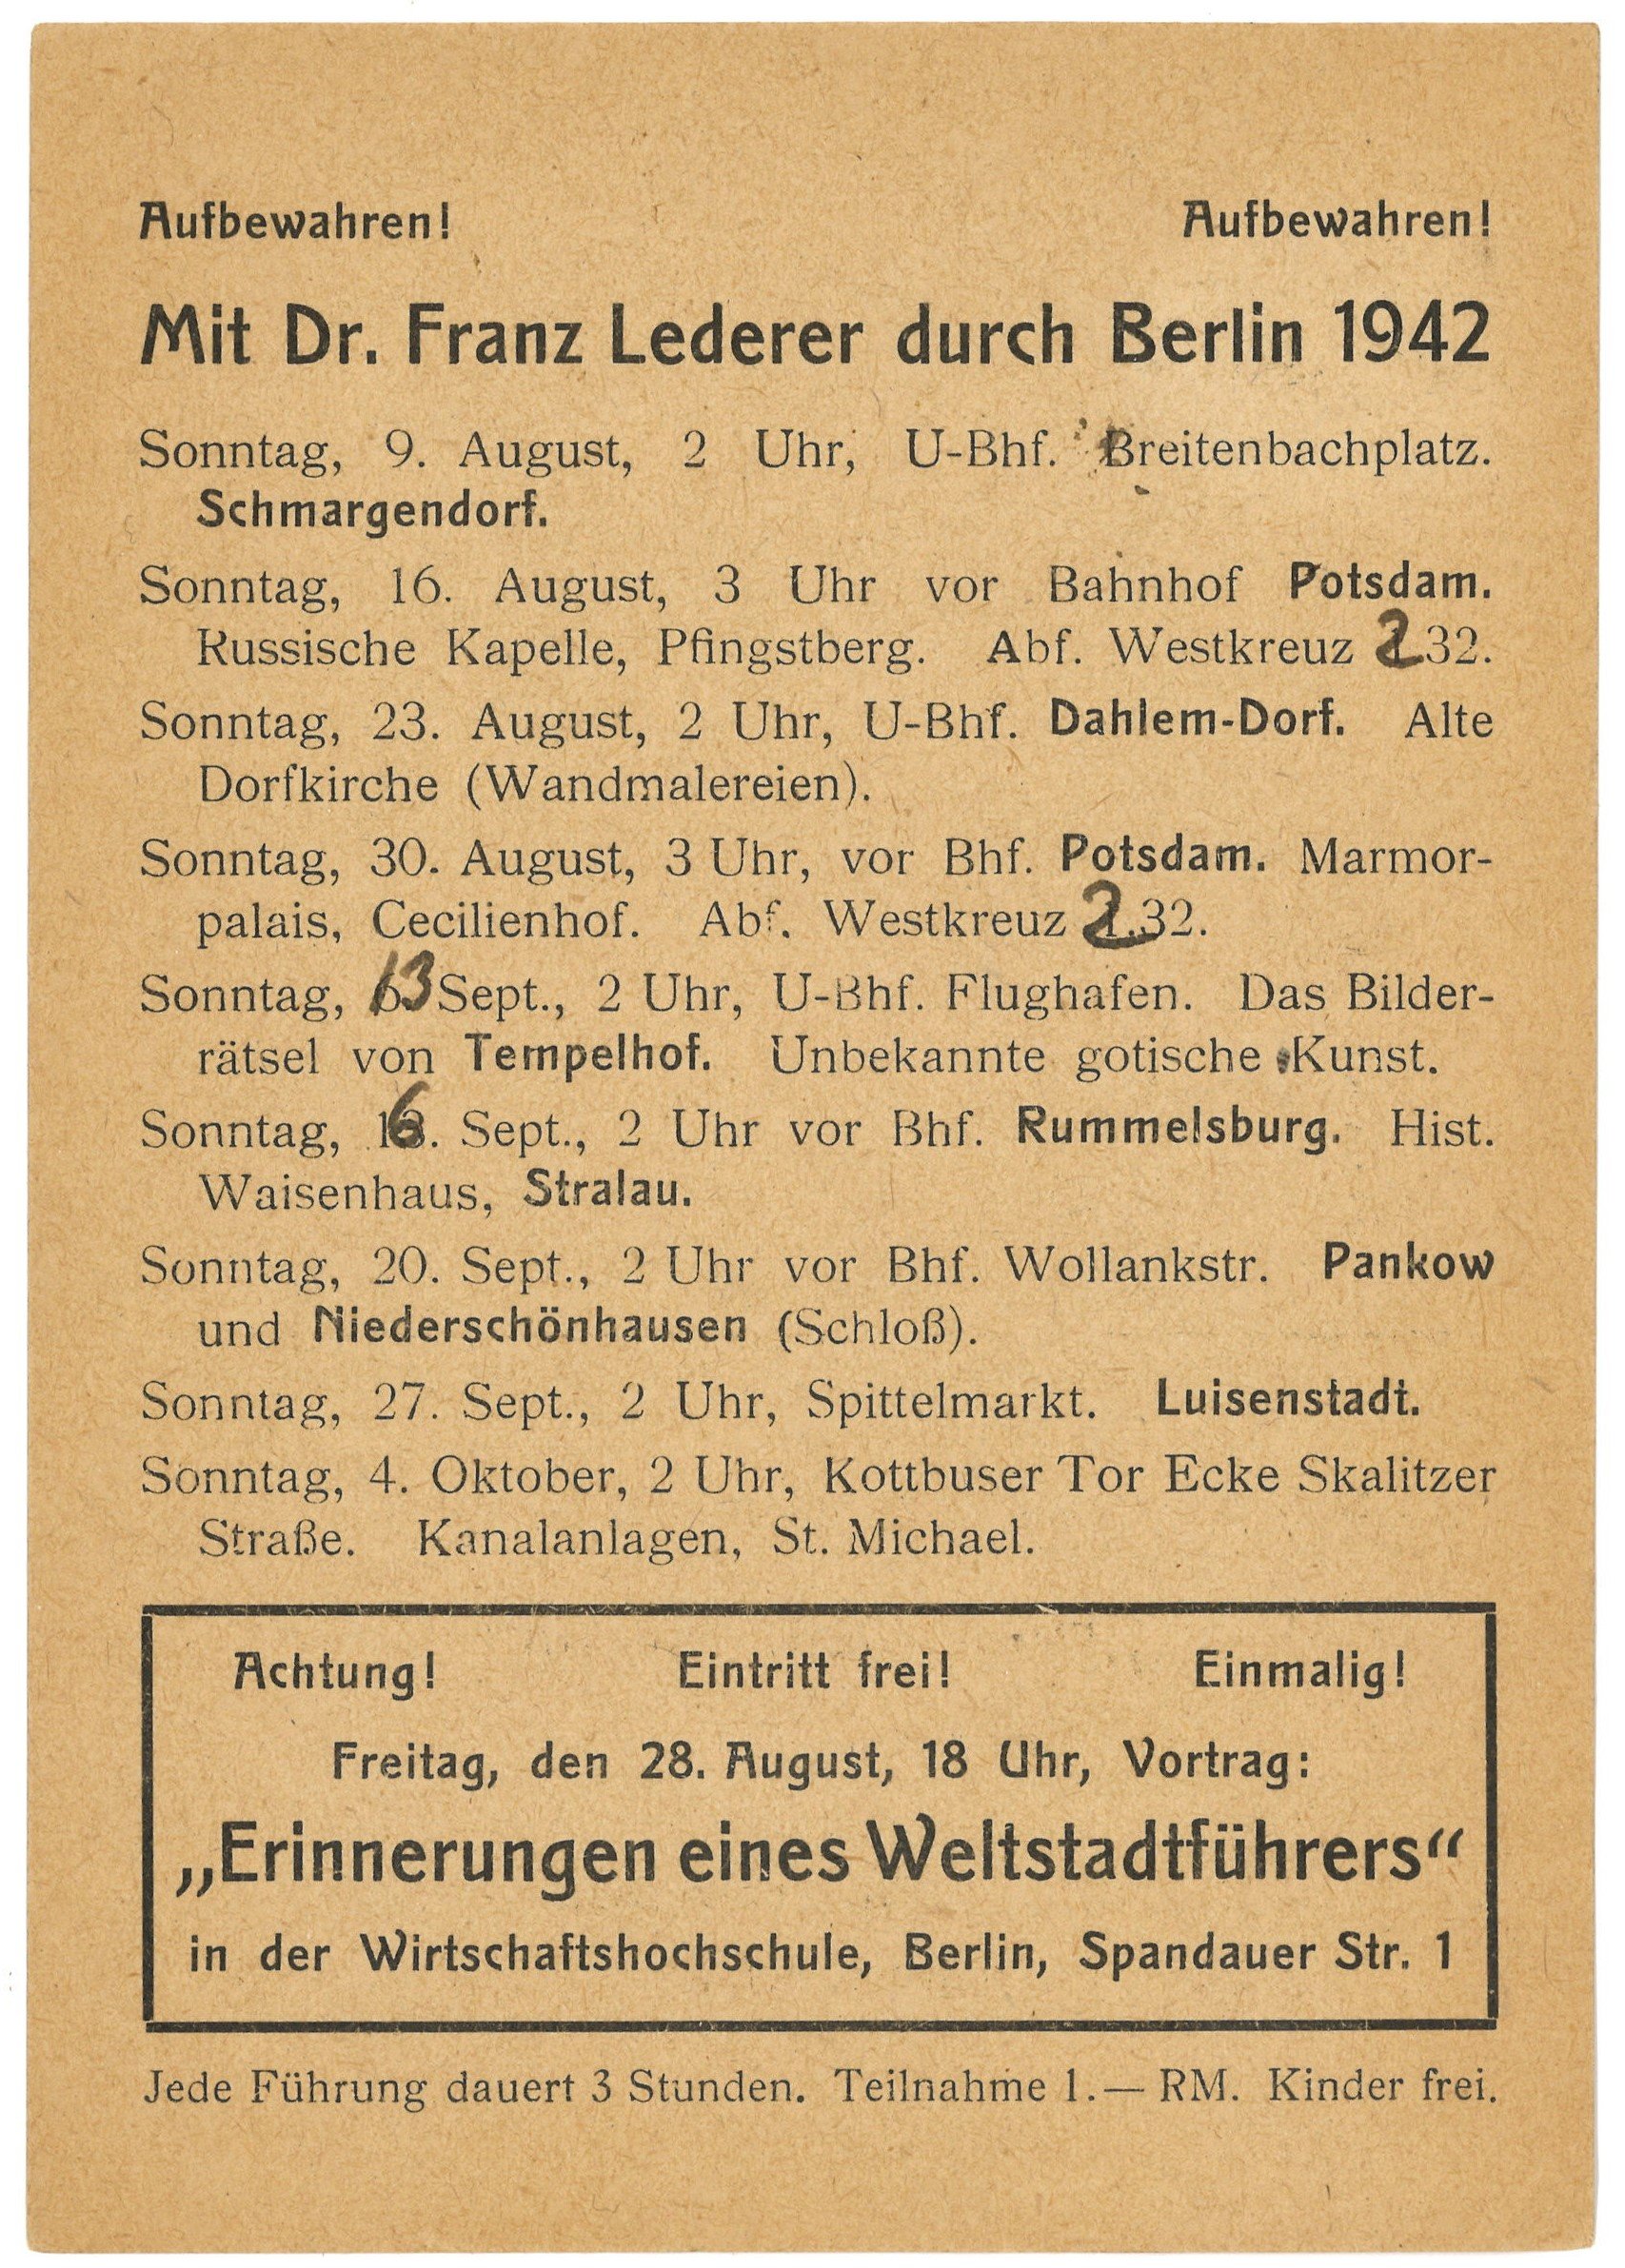 Programm der Berlin-Führungen von Dr. Franz Lederer für August bis Oktober 1942 (Landesgeschichtliche Vereinigung für die Mark Brandenburg e.V., Archiv CC BY)